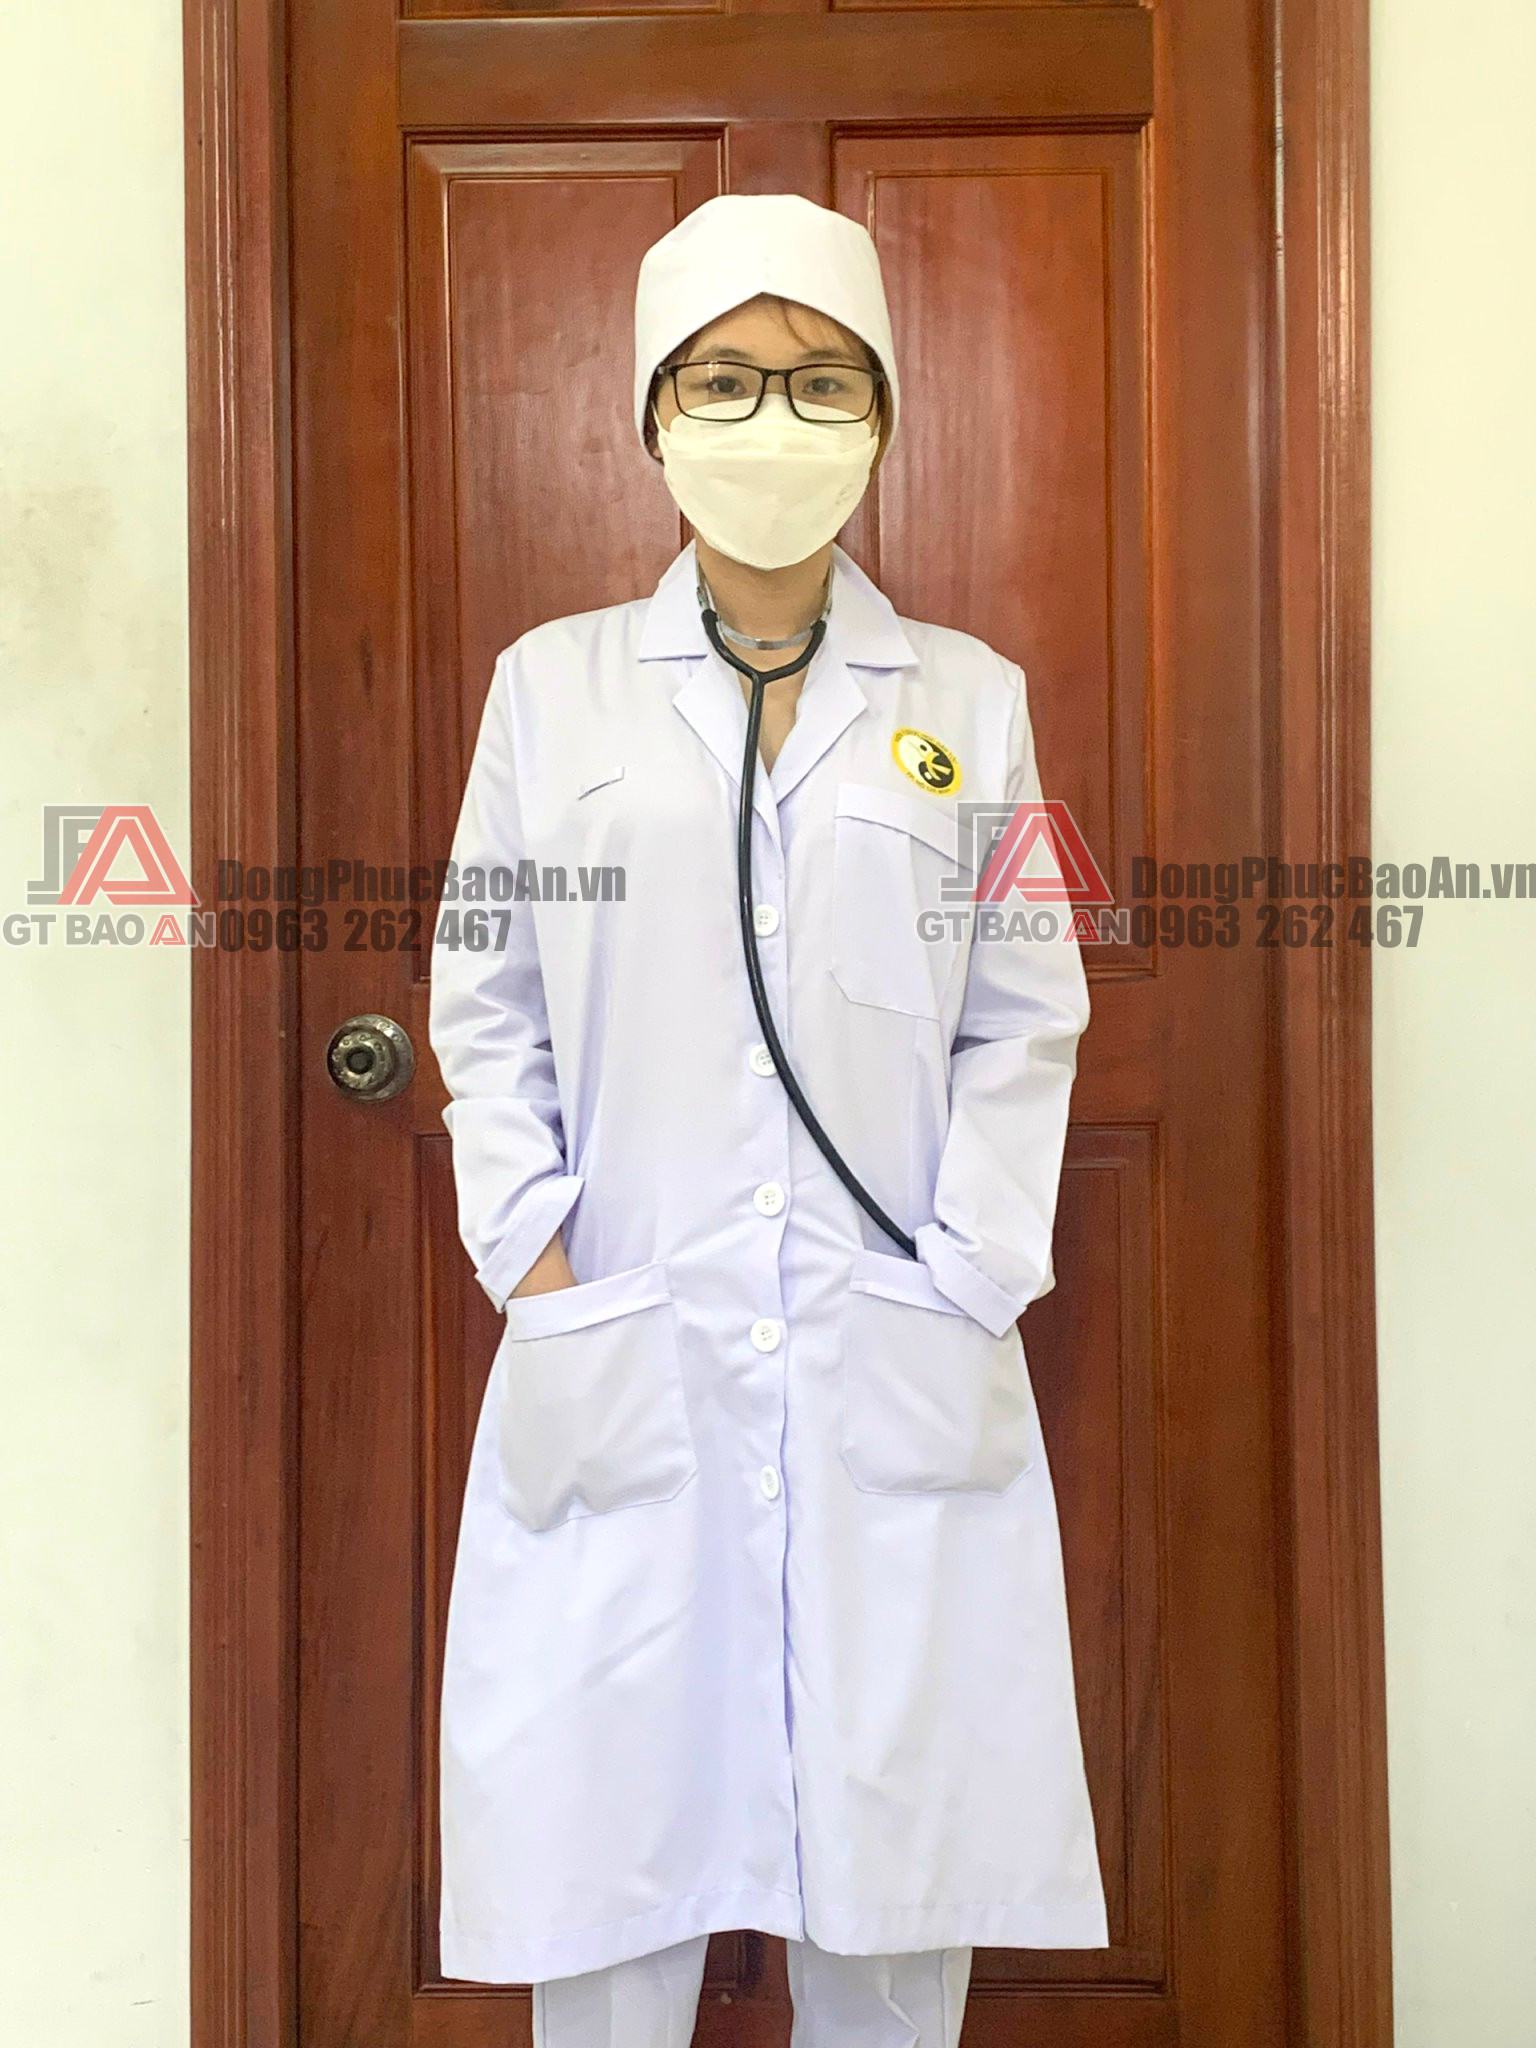 Mẫu quần áo blouse trắng dài tay (kèm nón) cho y bác sĩ - Y Dược Học Dân Tộc